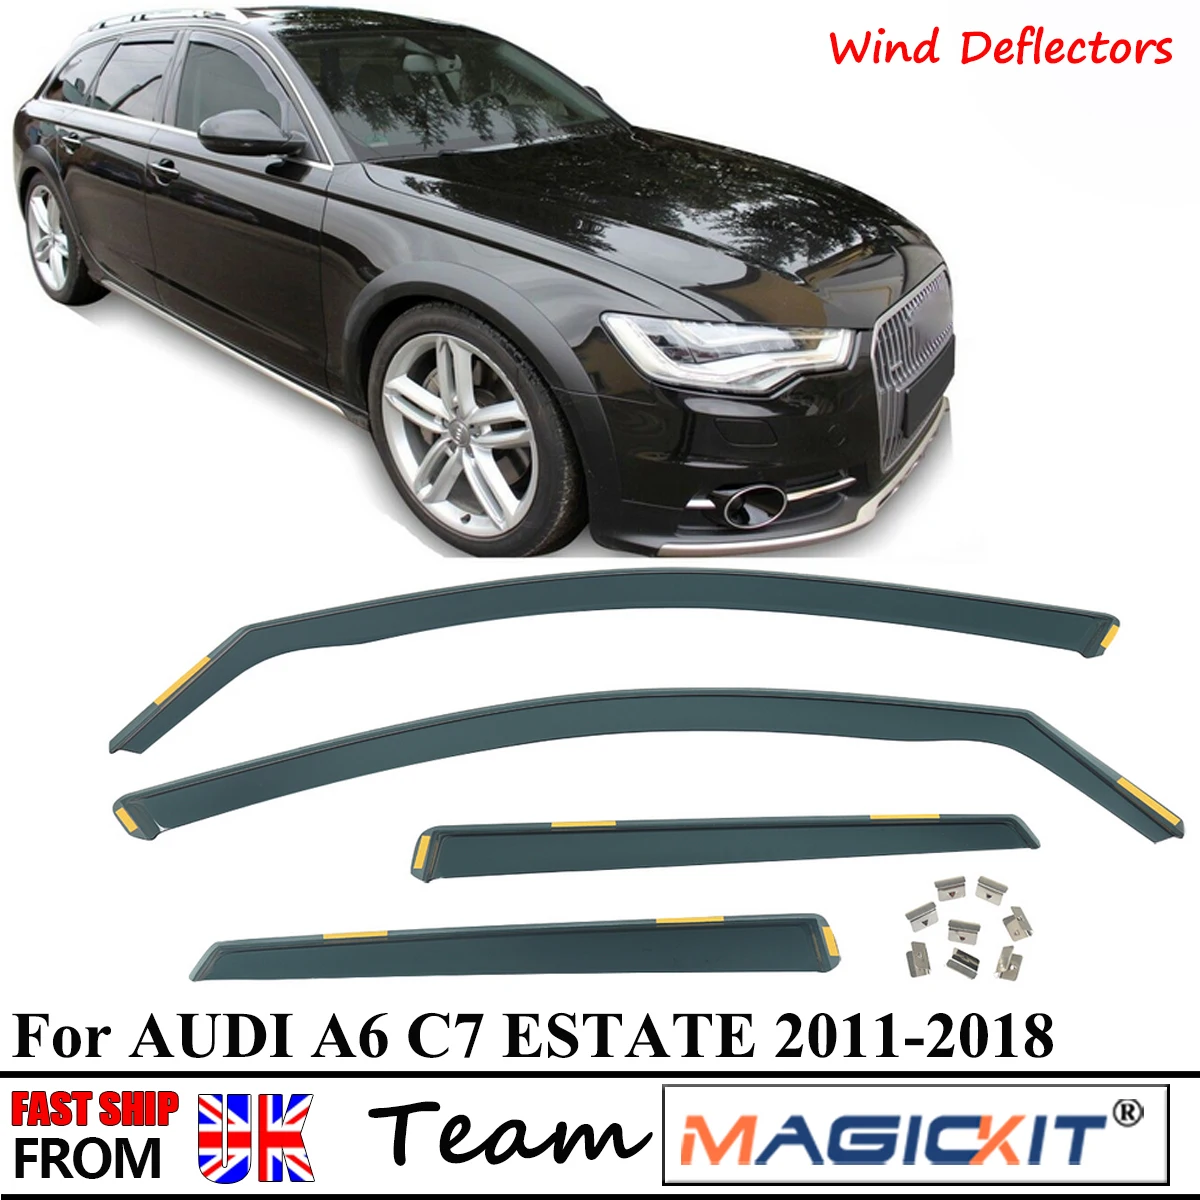 

Magickit TINTED RAIN WIND DEFLECTORS for AUDI A6 C7 5 DOOR ESTATE 2011-2018 4pc